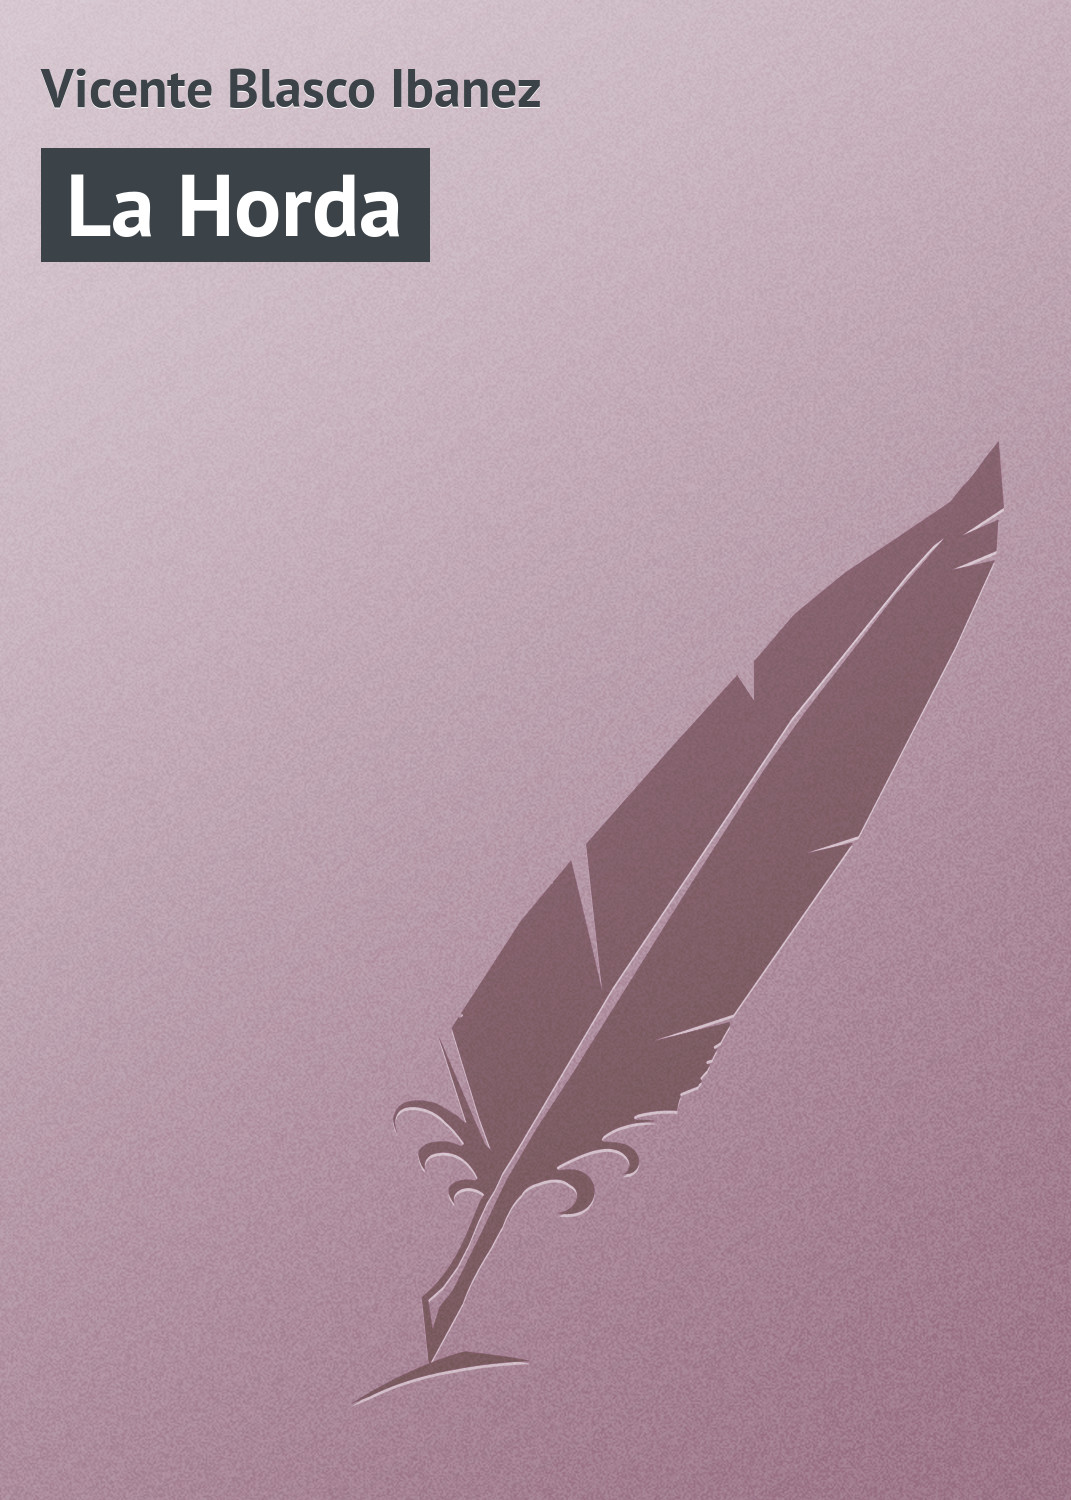 Книга La Horda из серии , созданная Vicente Blasco, может относится к жанру Зарубежная старинная литература, Зарубежная классика. Стоимость электронной книги La Horda с идентификатором 21107910 составляет 5.99 руб.